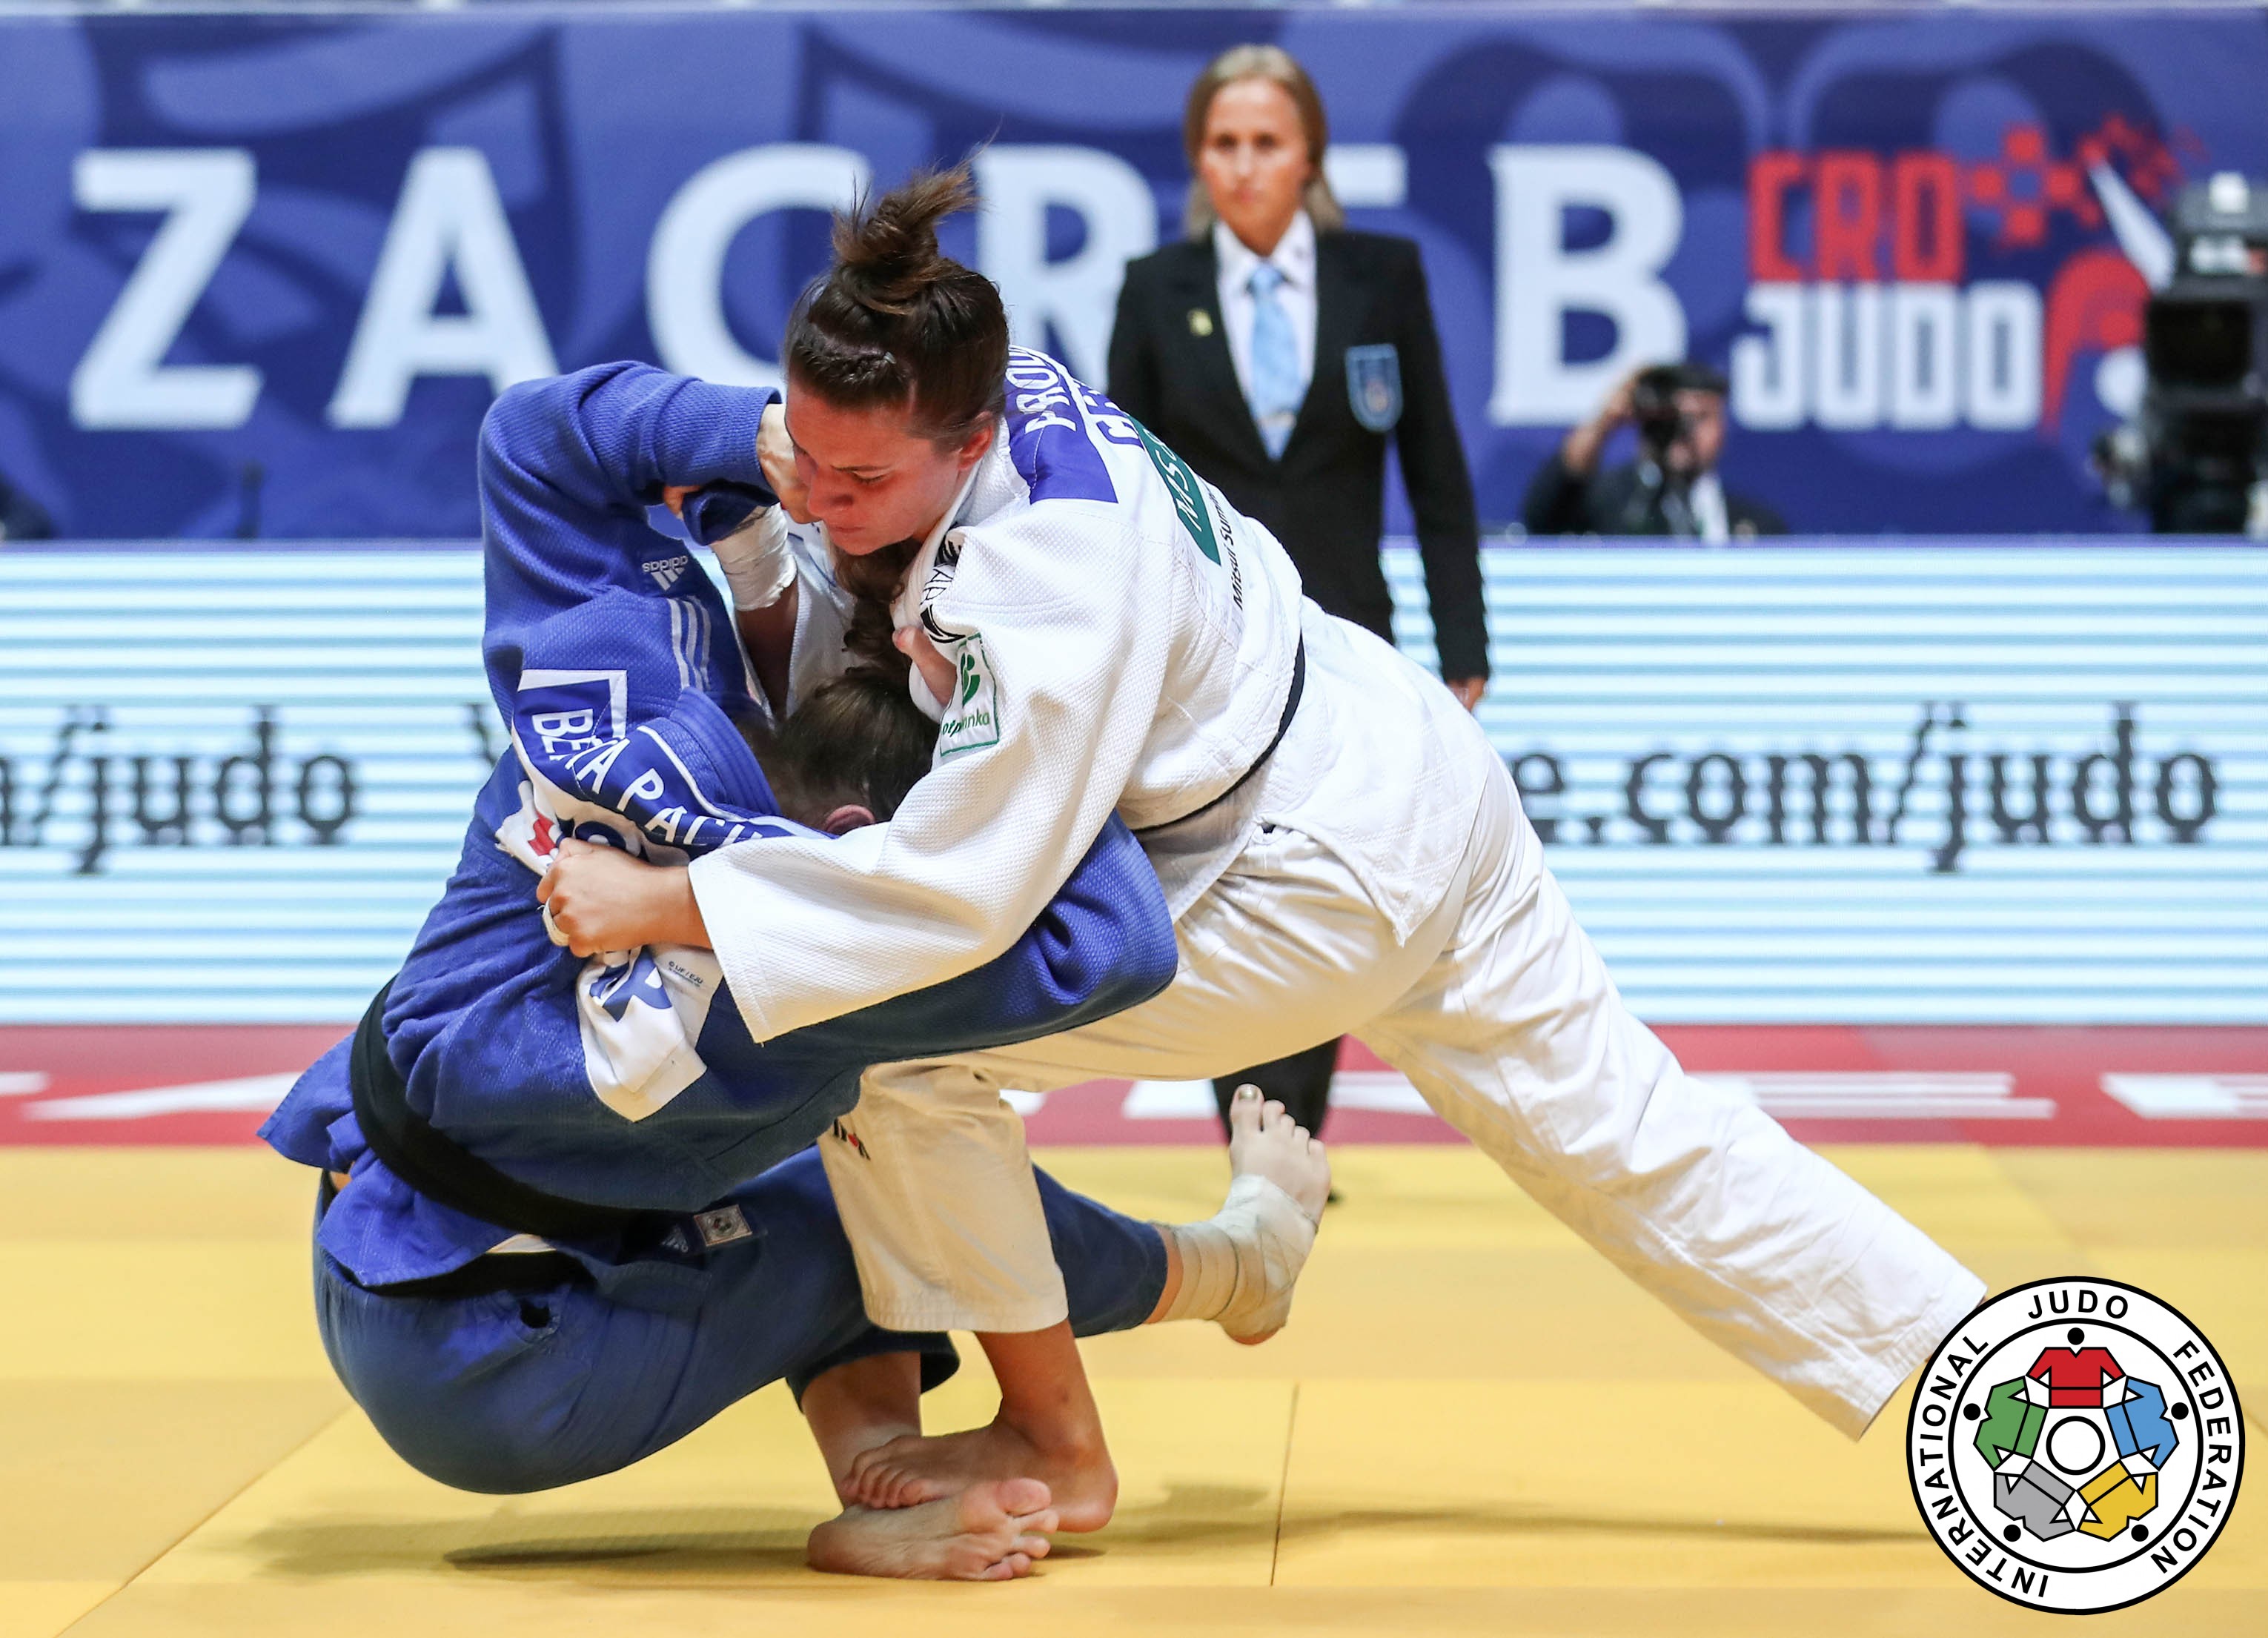 IJF-Judo-Grand-Prix-Zagreb-2019-Prodan-3